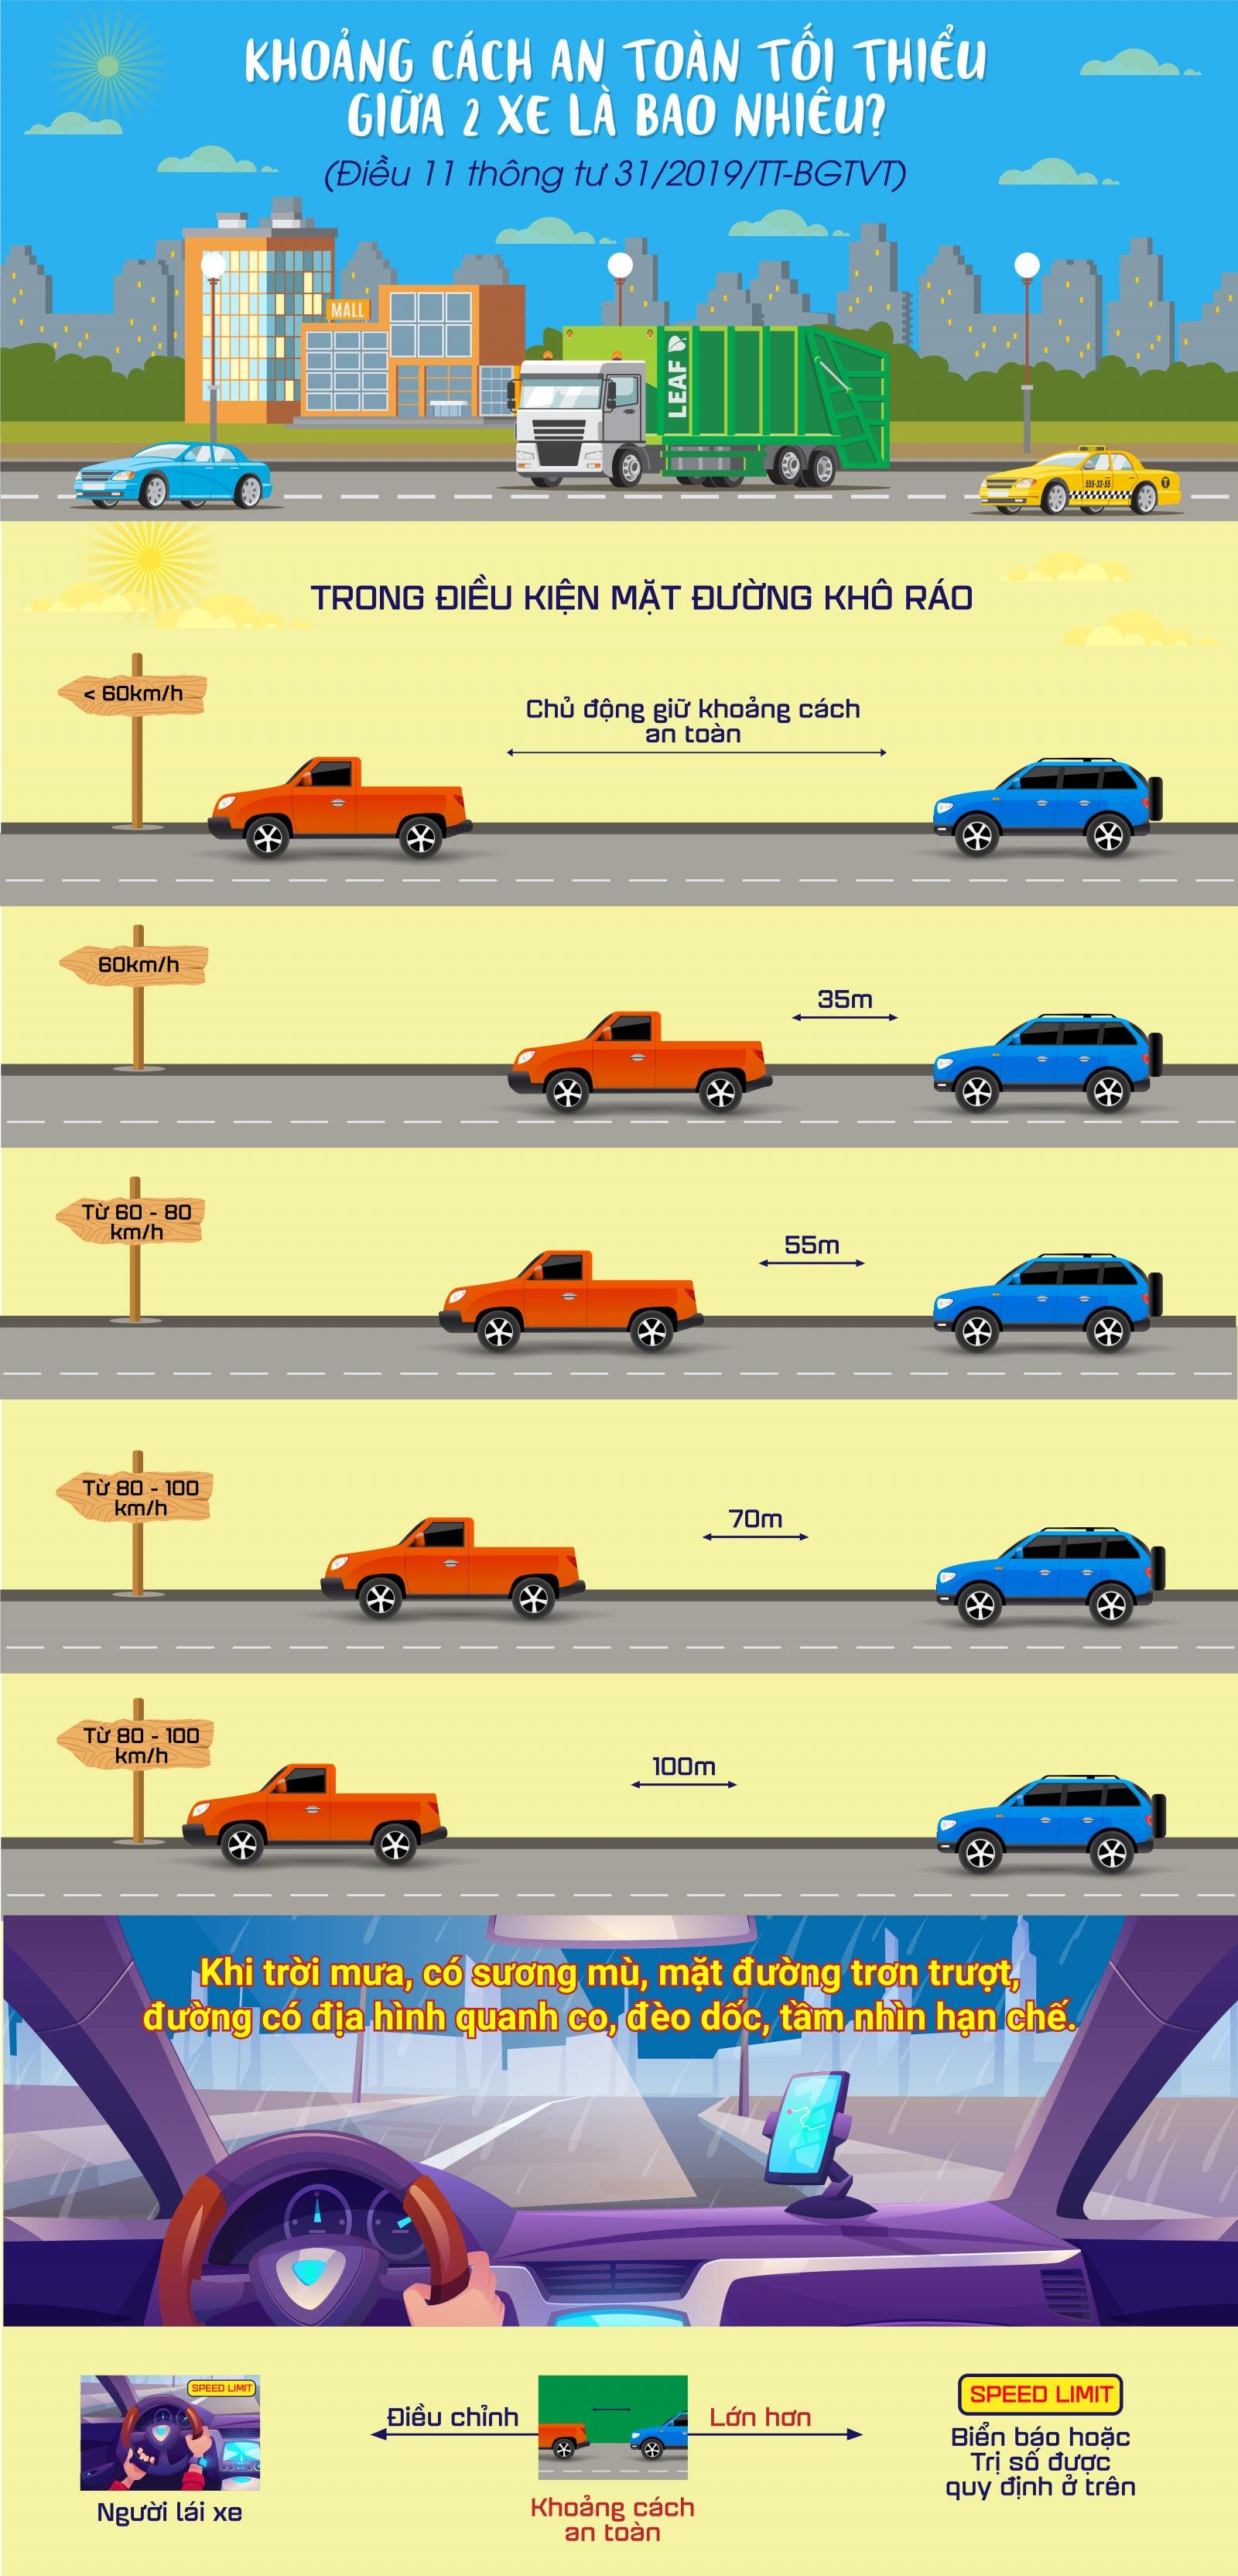 [Infographic] Quy định về khoảng cách an giữa 2 xe khi tham gia giao thông a1